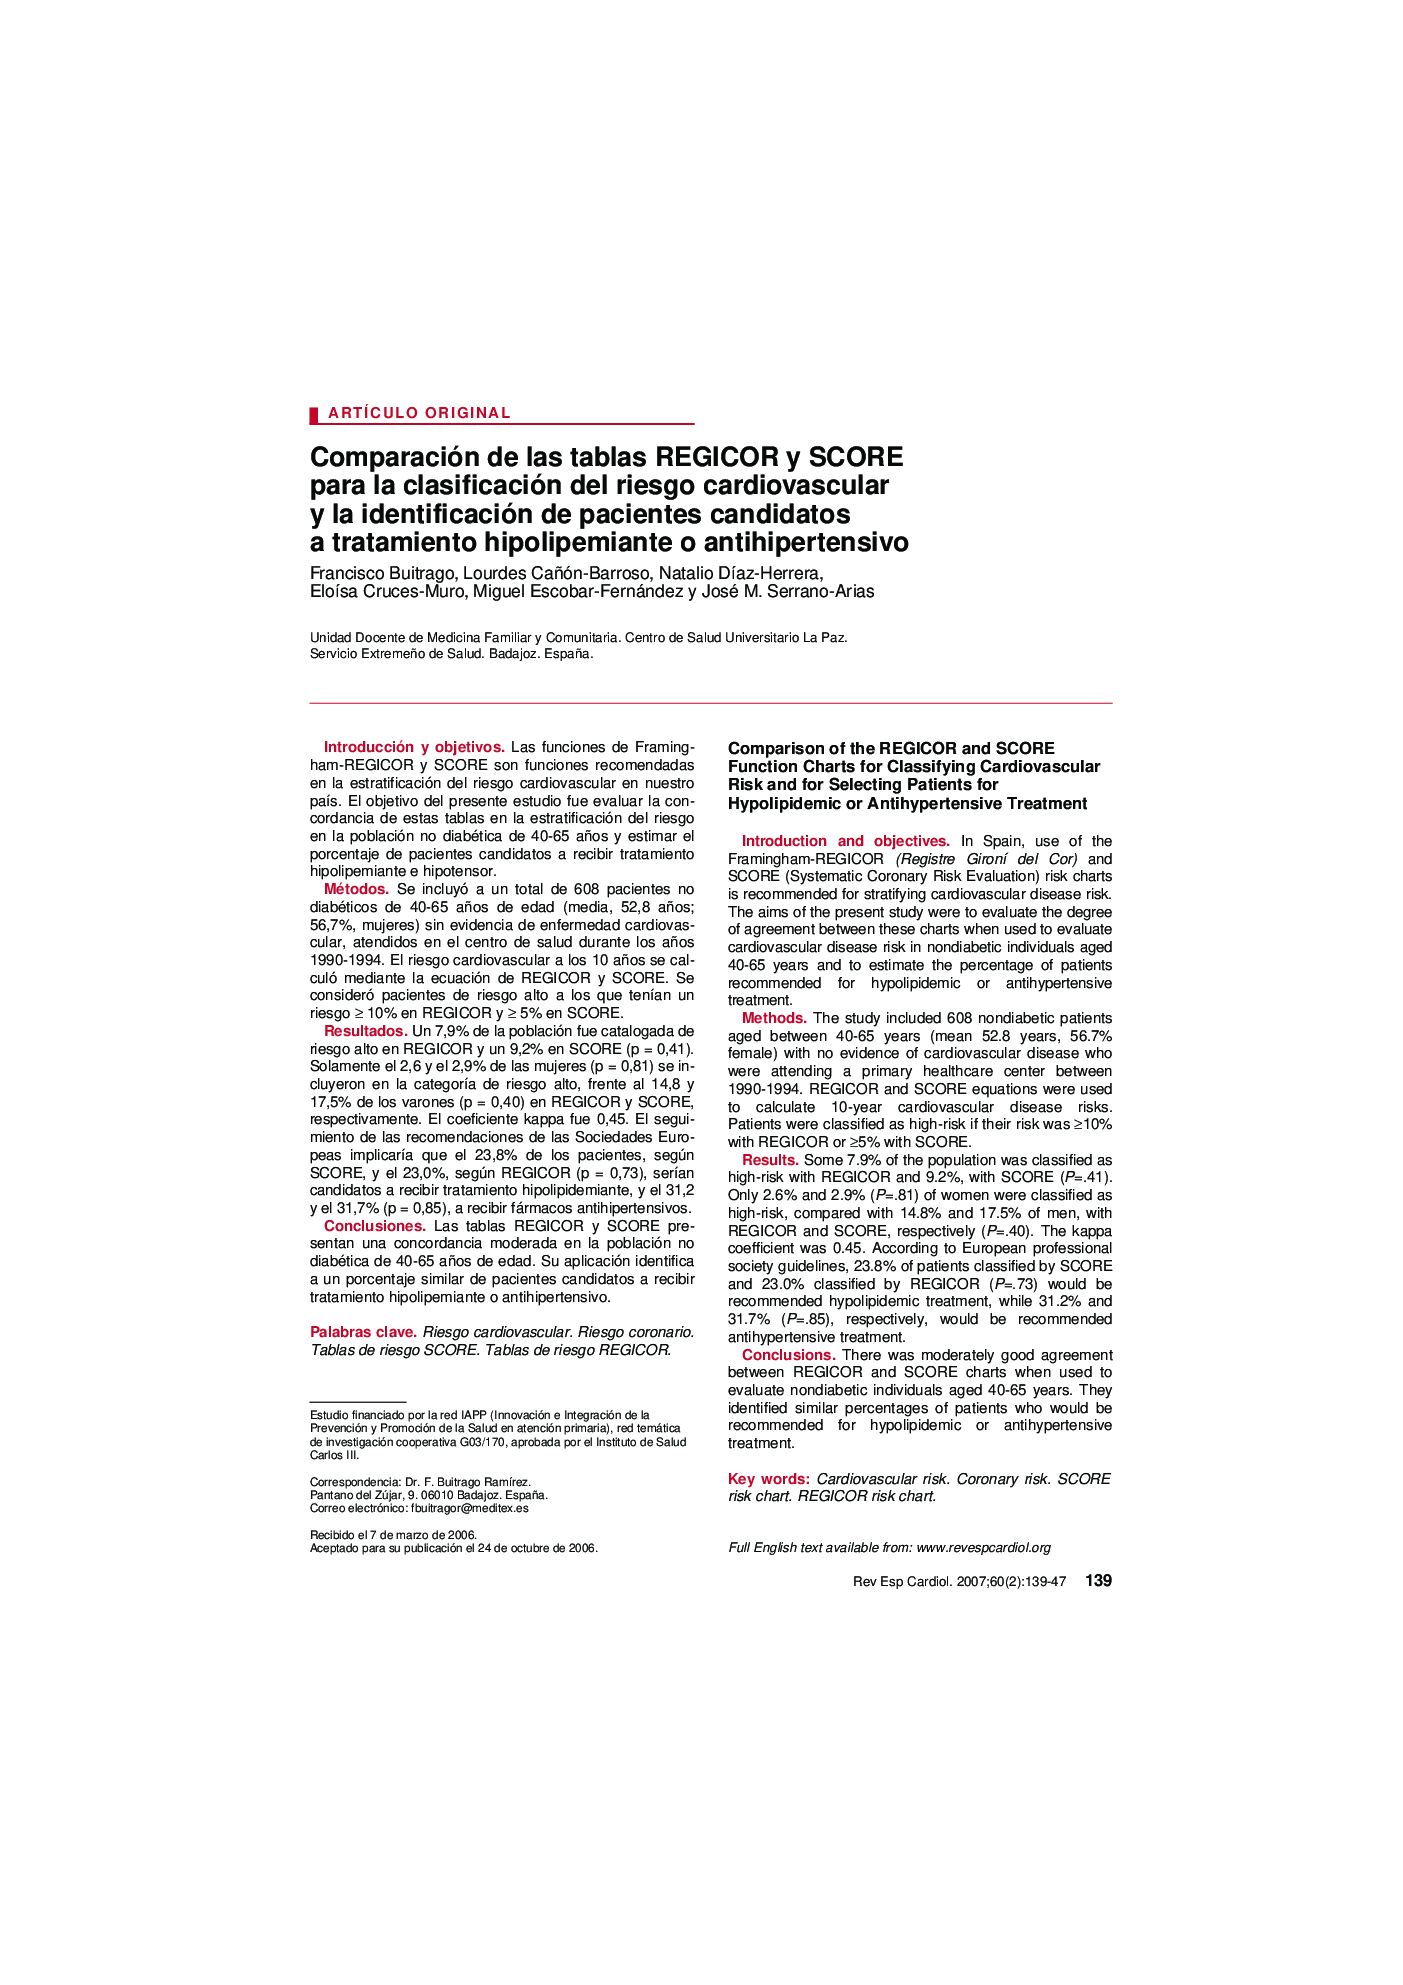 Comparación de las tablas REGICOR y SCORE para la clasificación del riesgo cardiovascular y la identificación de pacientes candidatos a tratamiento hipolipemiante o antihipertensivo